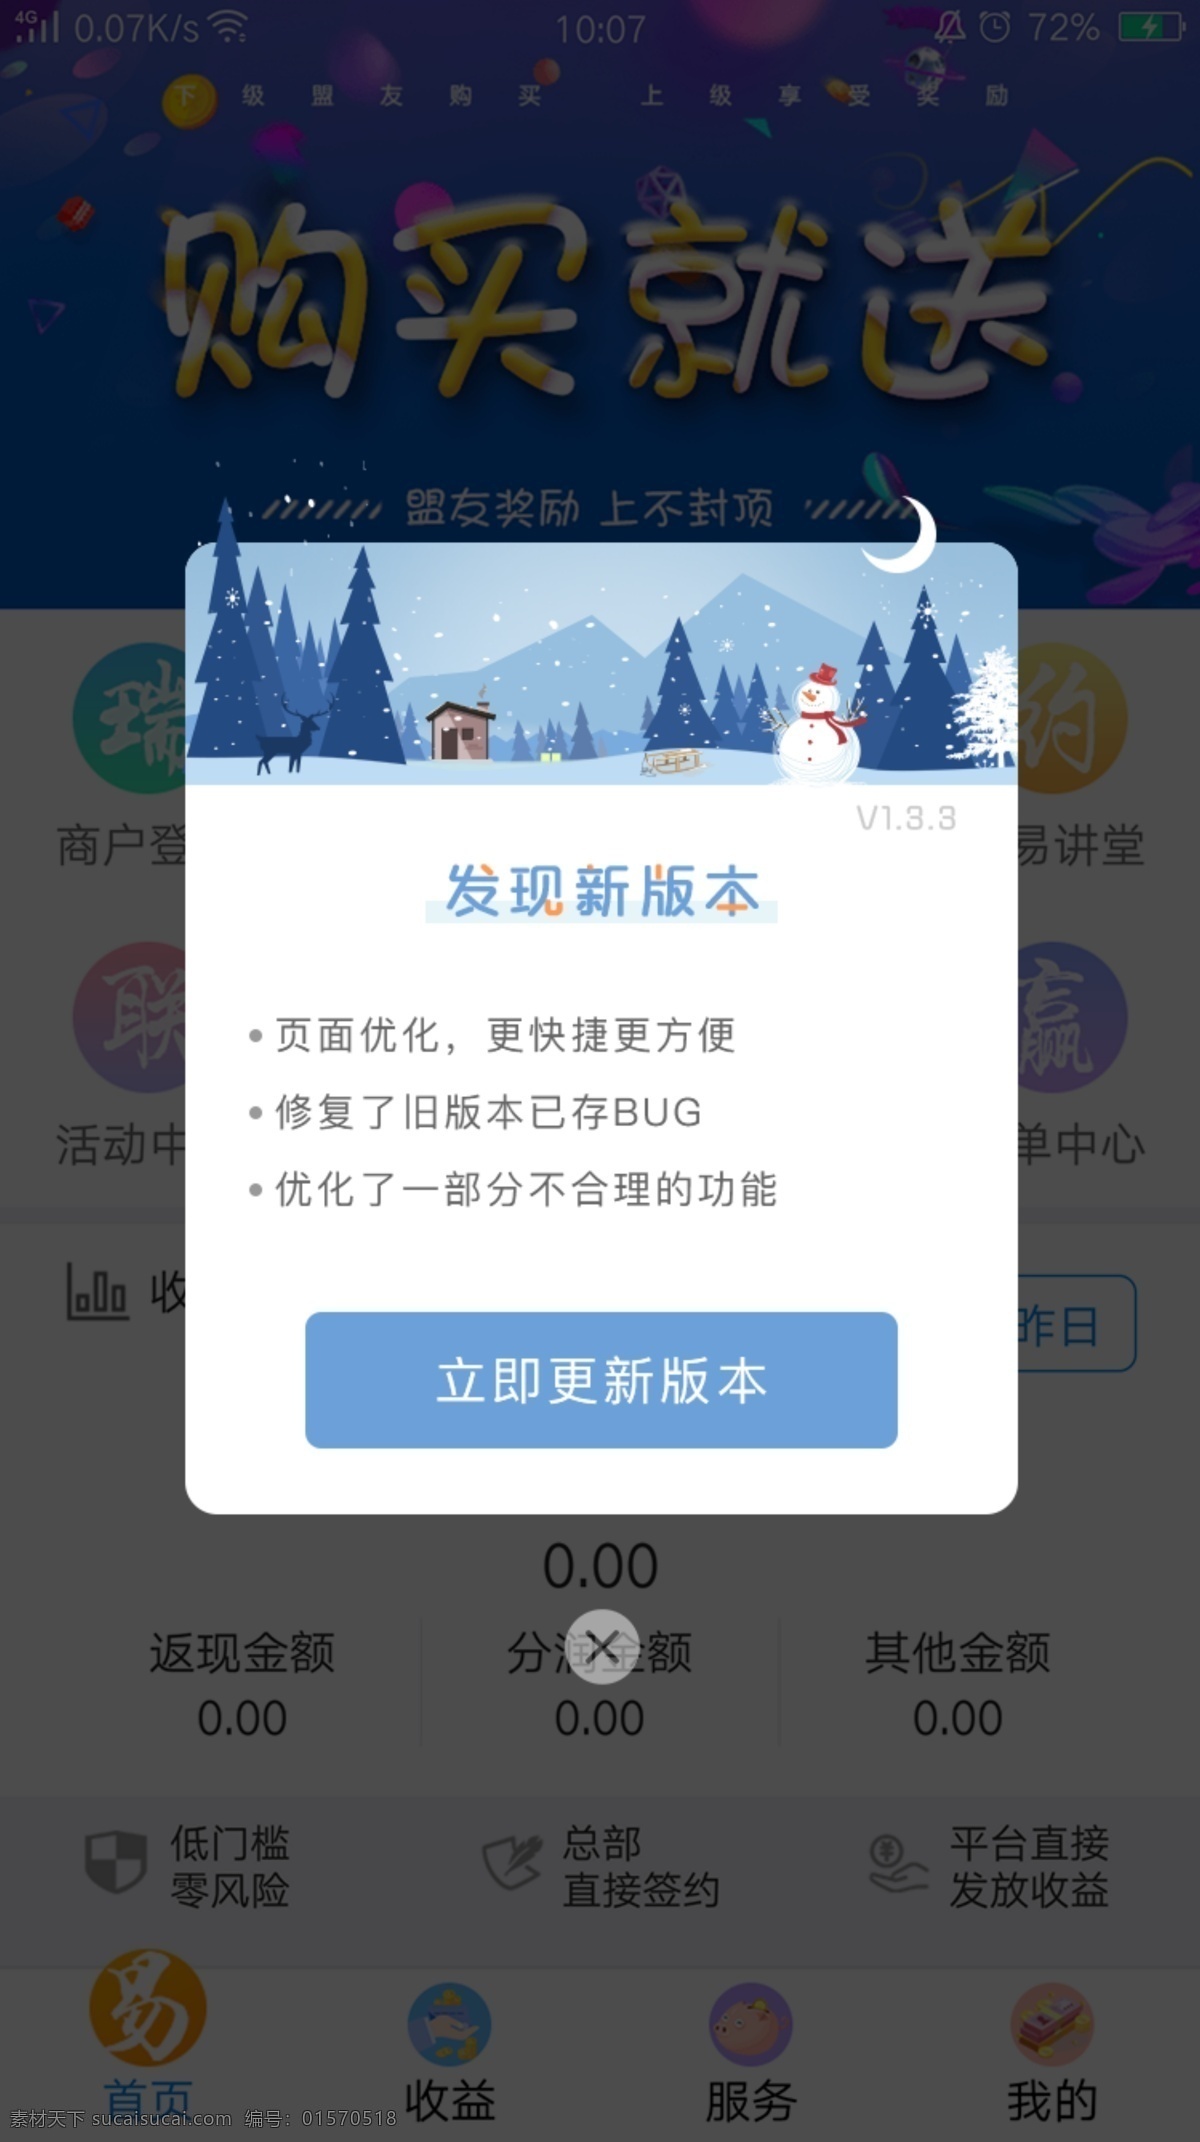 蓝色 冰雪 版本 更新 弹 框 更新弹框 弹框 app弹框 app更新 升级更新